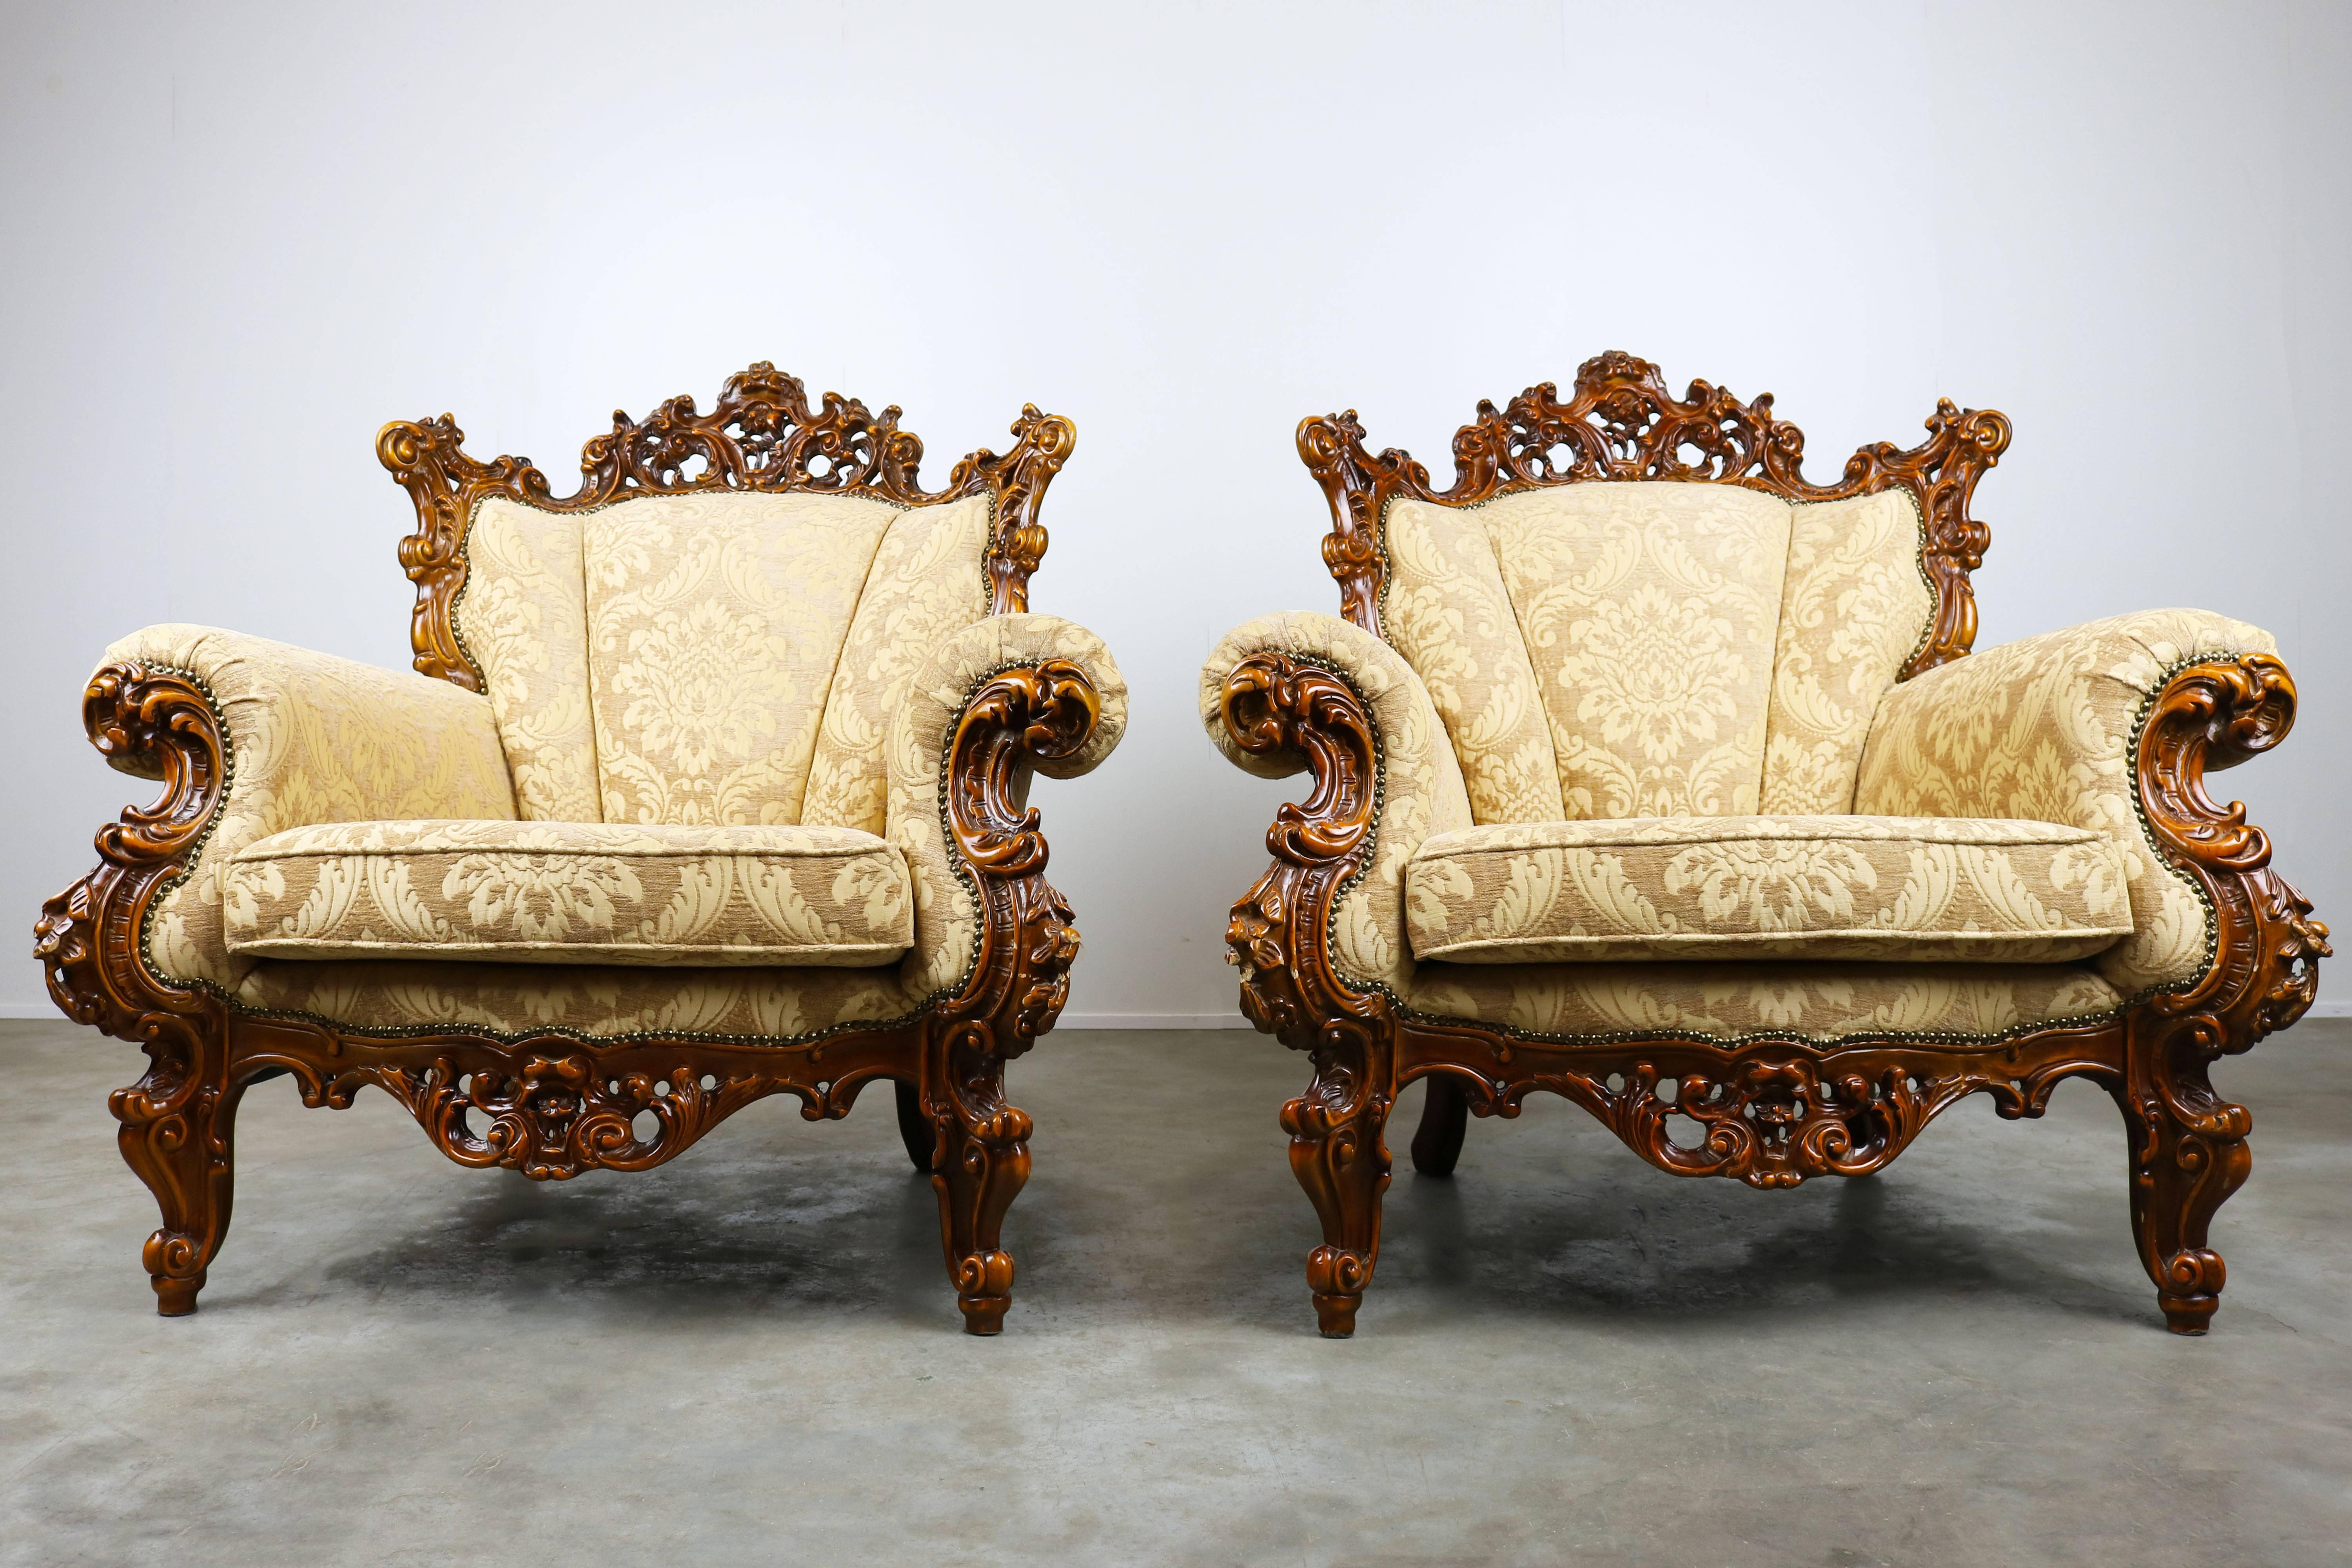 Une merveilleuse paire de luxueuses chaises longues italiennes anciennes de style rococo/baroque. Les chaises ont été récemment retapissées et ont un aspect royal et chaleureux. Ils sont très confortables et en parfaite condition. De quoi attirer le